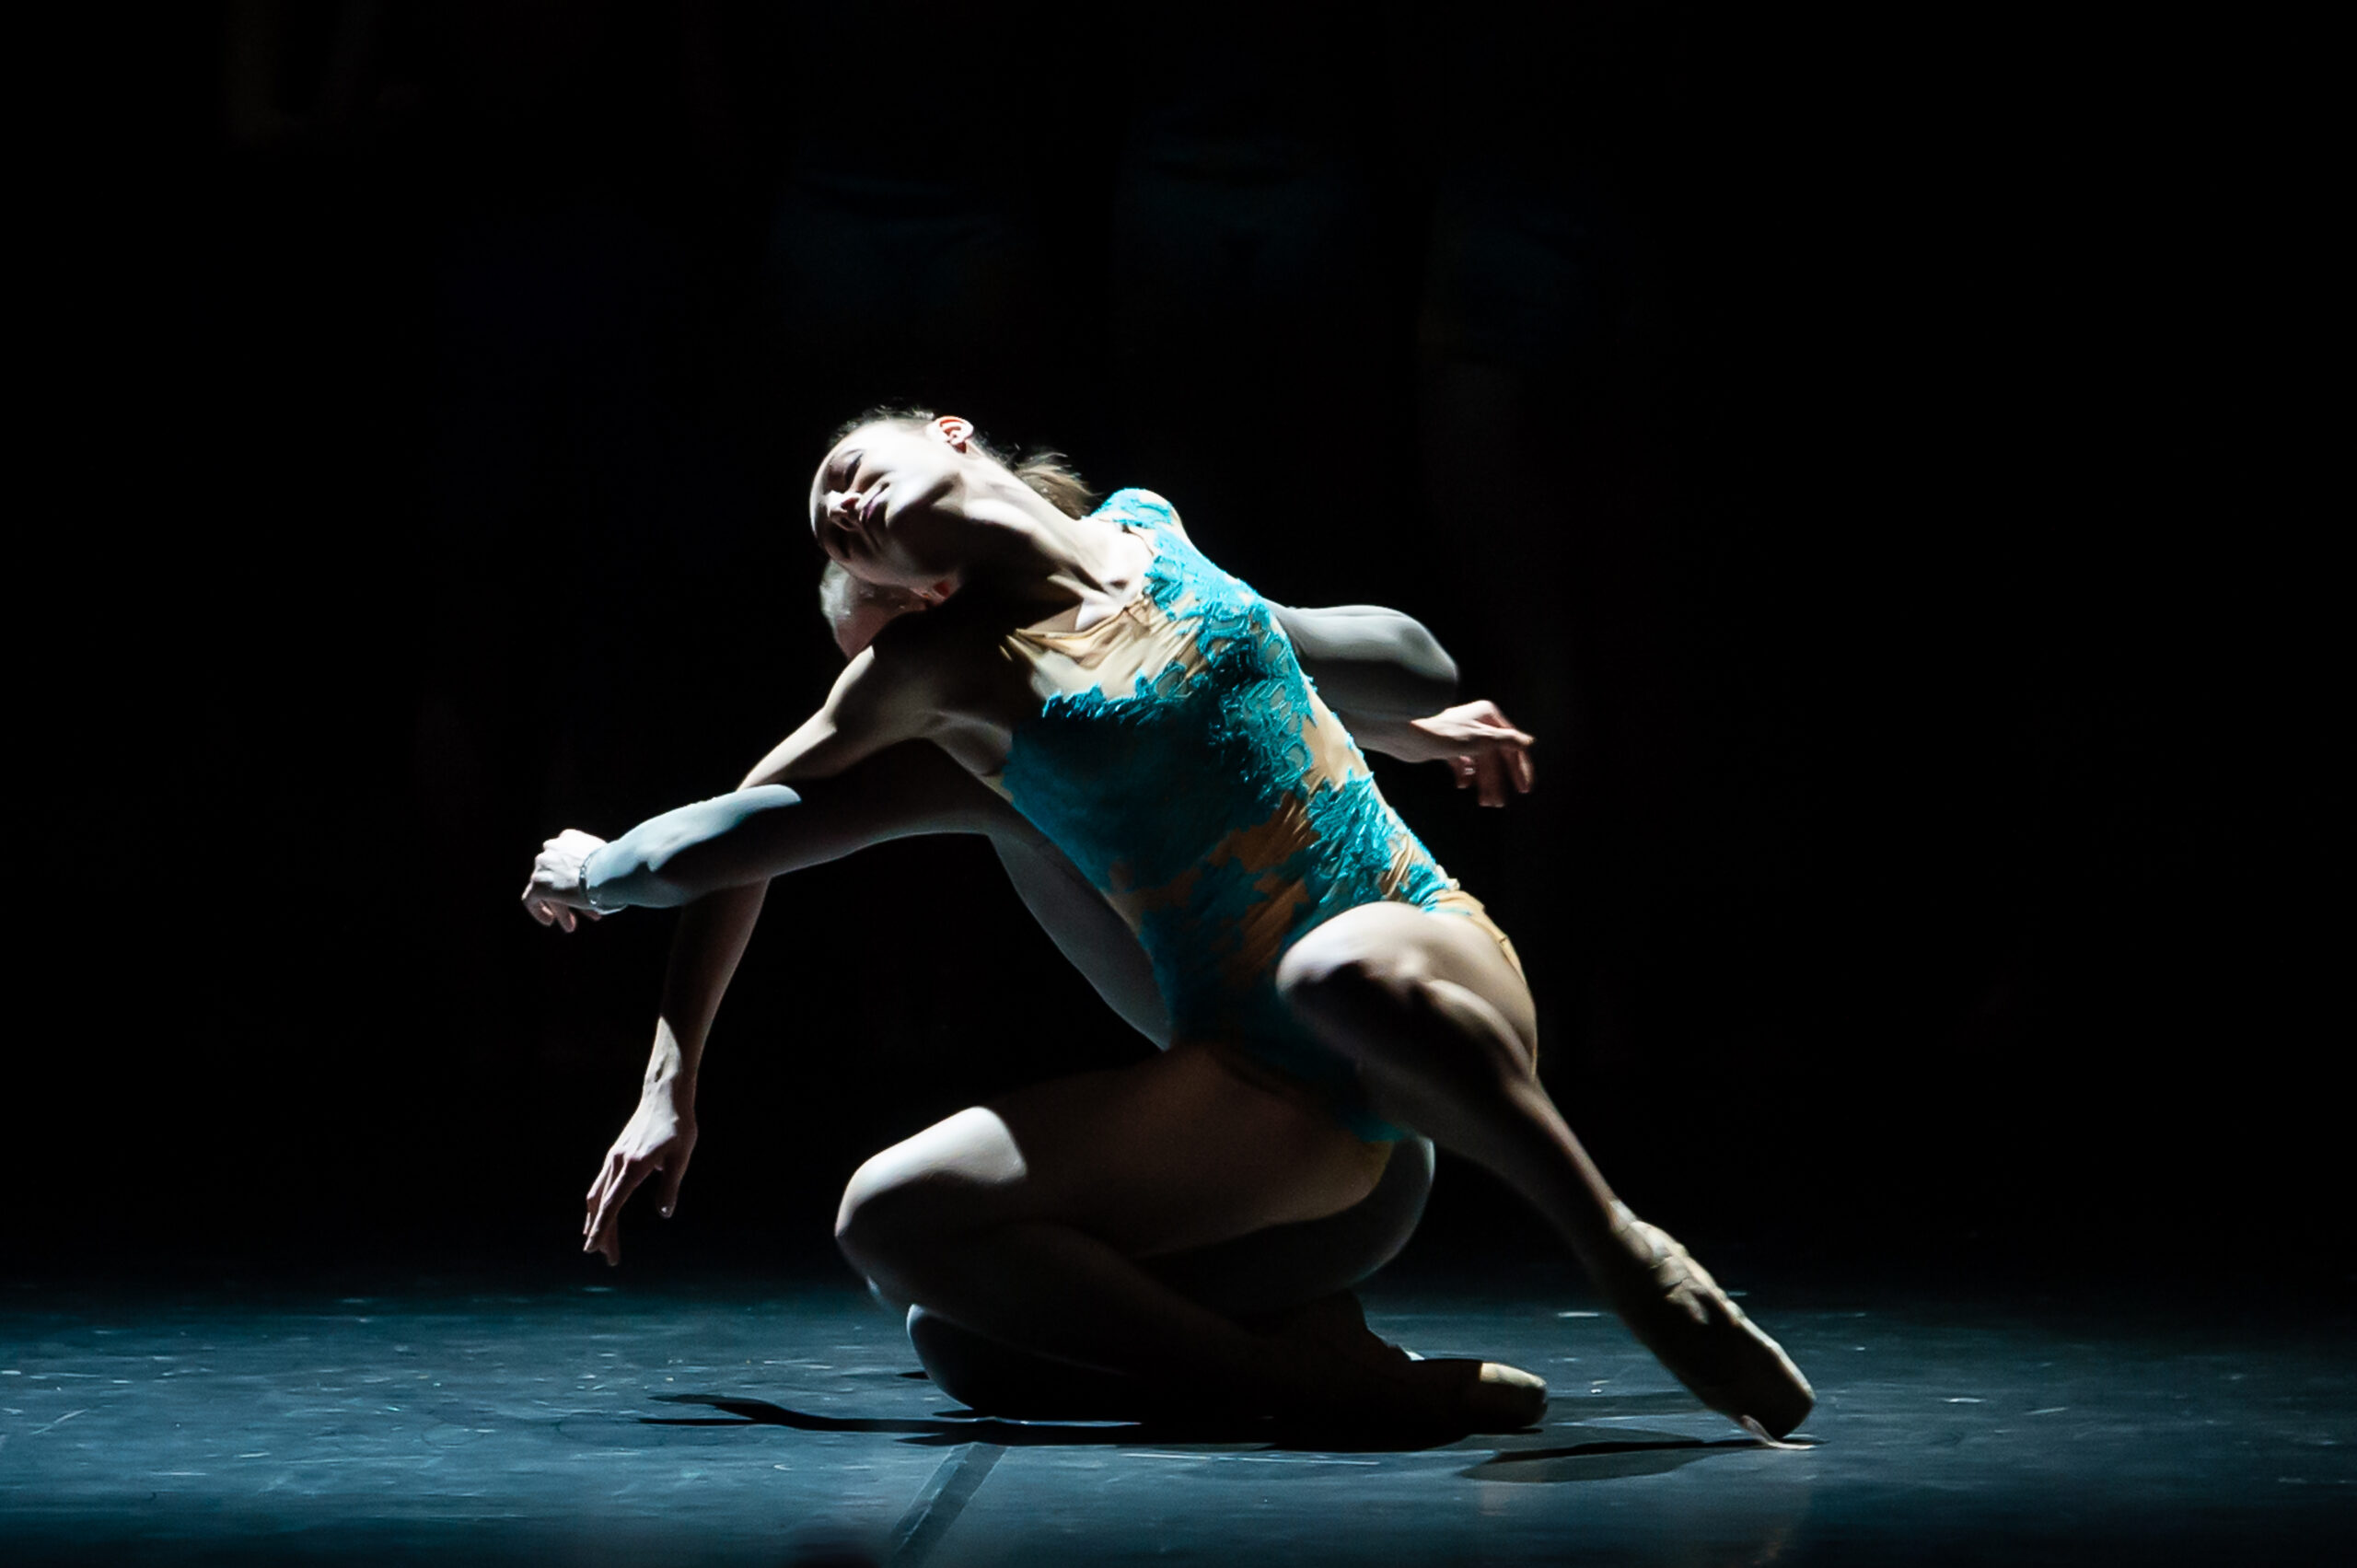 Le Théâtre Benoît XII accueille le Conservatoire à Rayonnement Régional du Grand Avignon pour le spectacle « Libre court » – Histoire d’apprentis danseurs